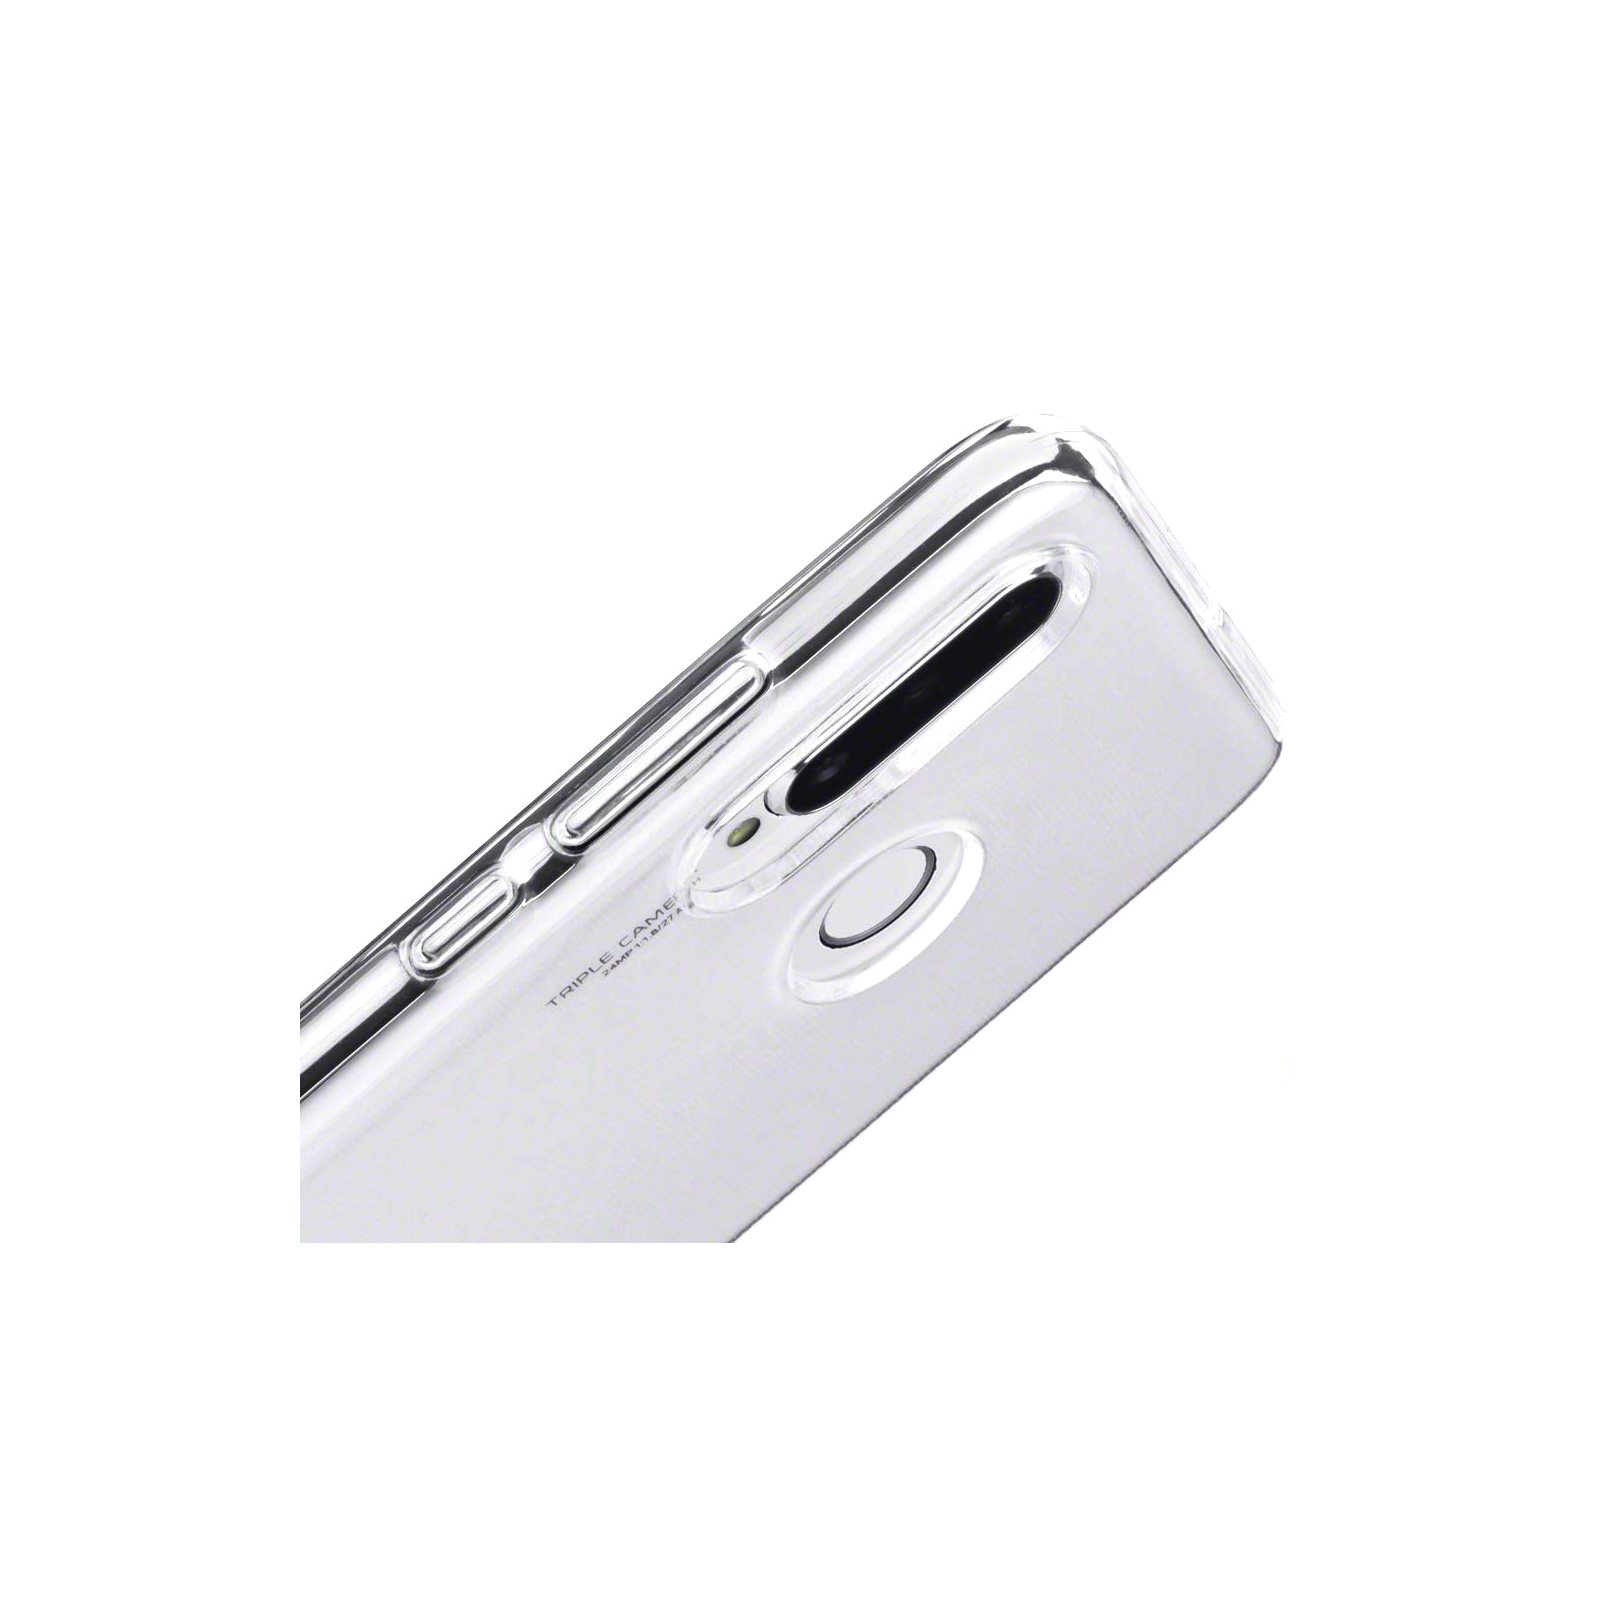 Чехол для мобильного телефона Laudtec для Huawei P30 Lite Clear tpu (Transperent) (LC-P30L) изображение 7